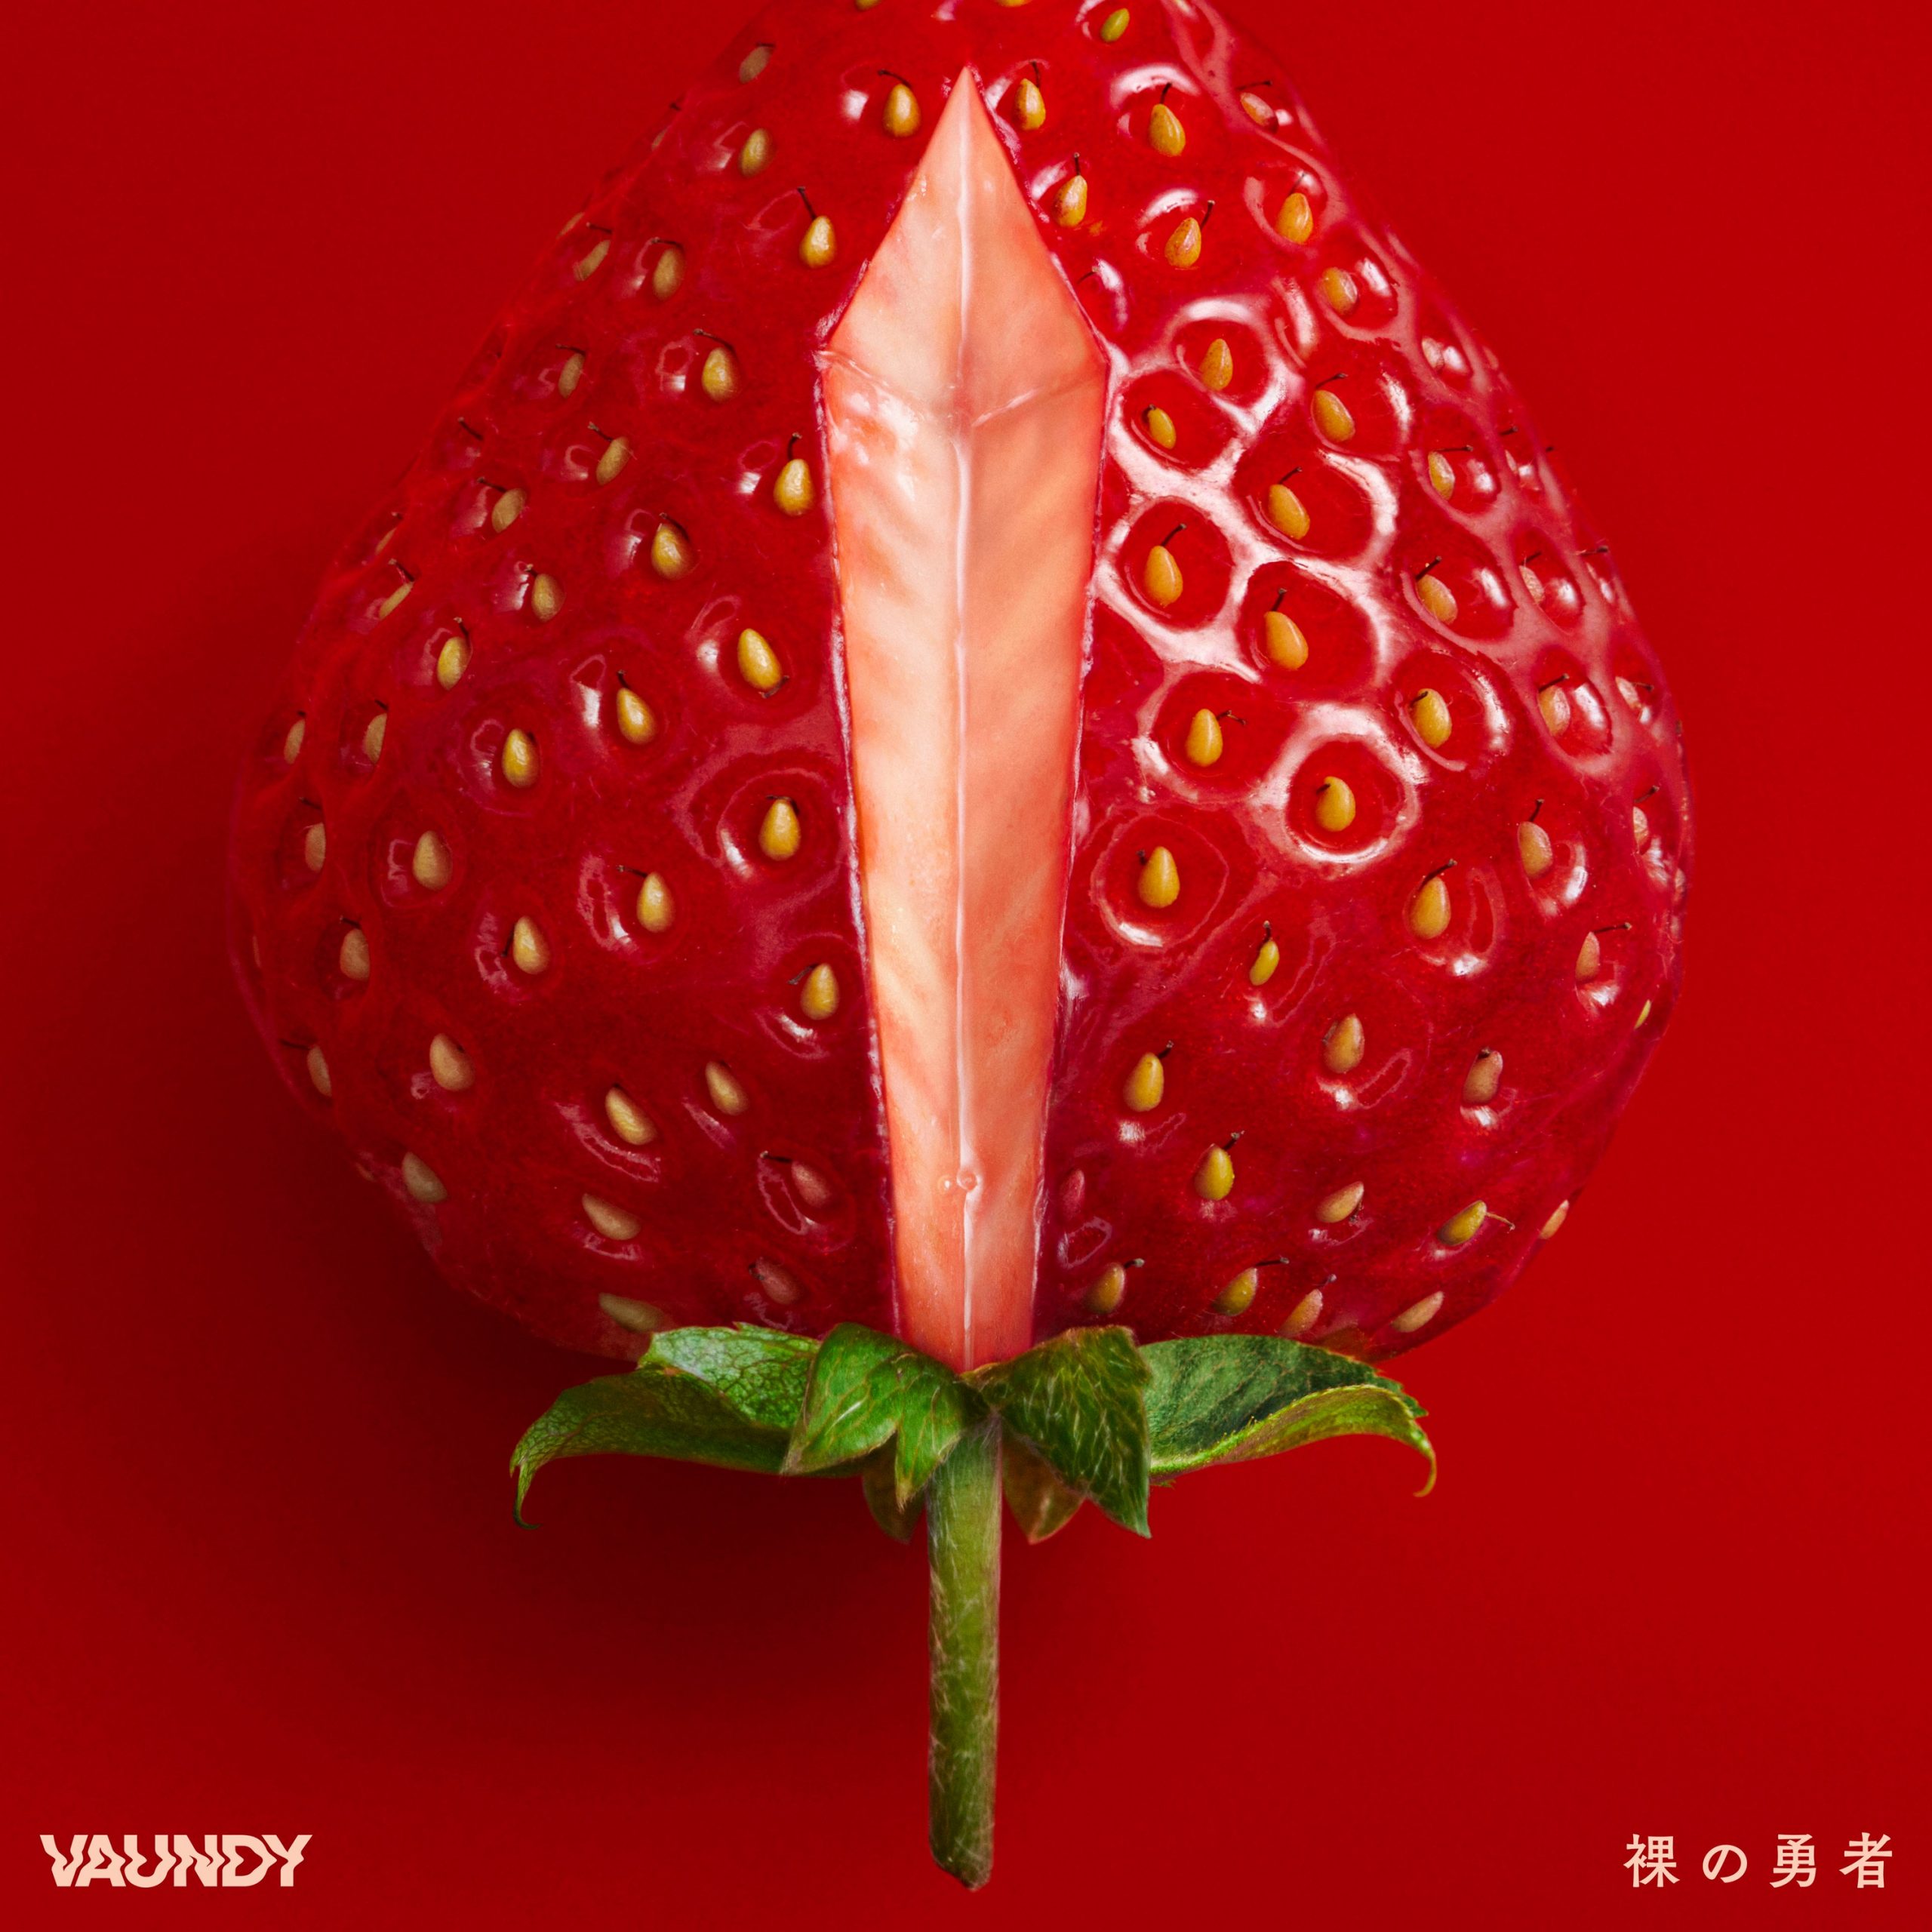 Vaundy — HERO cover artwork